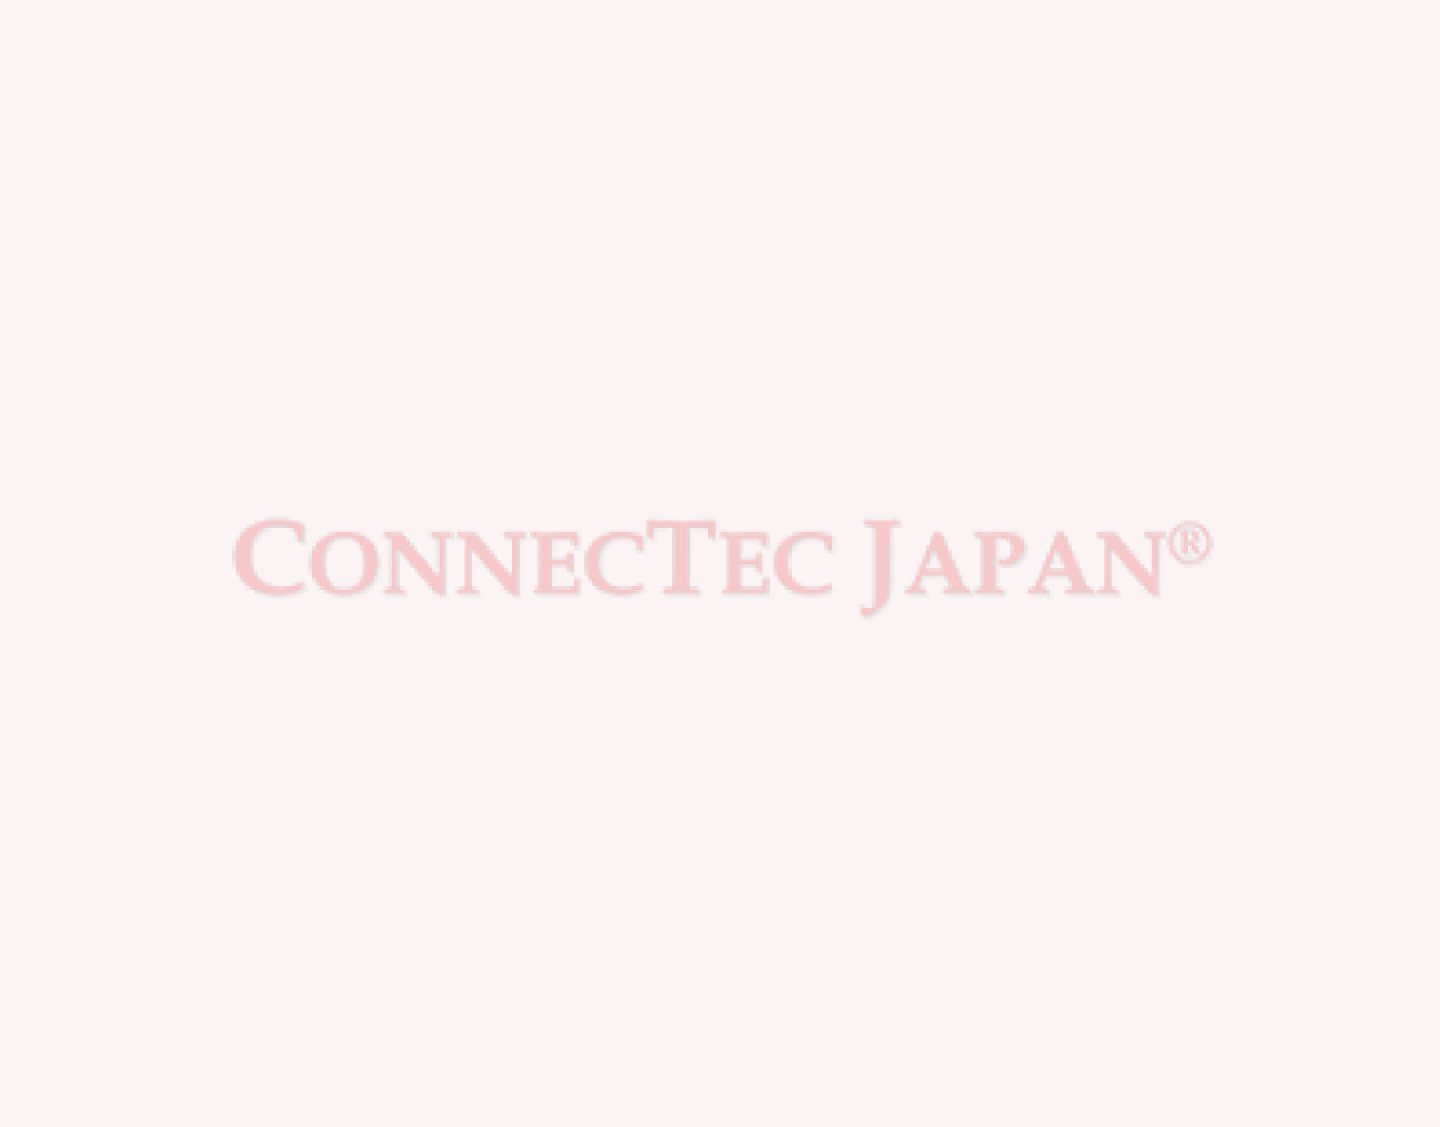 connectec japan